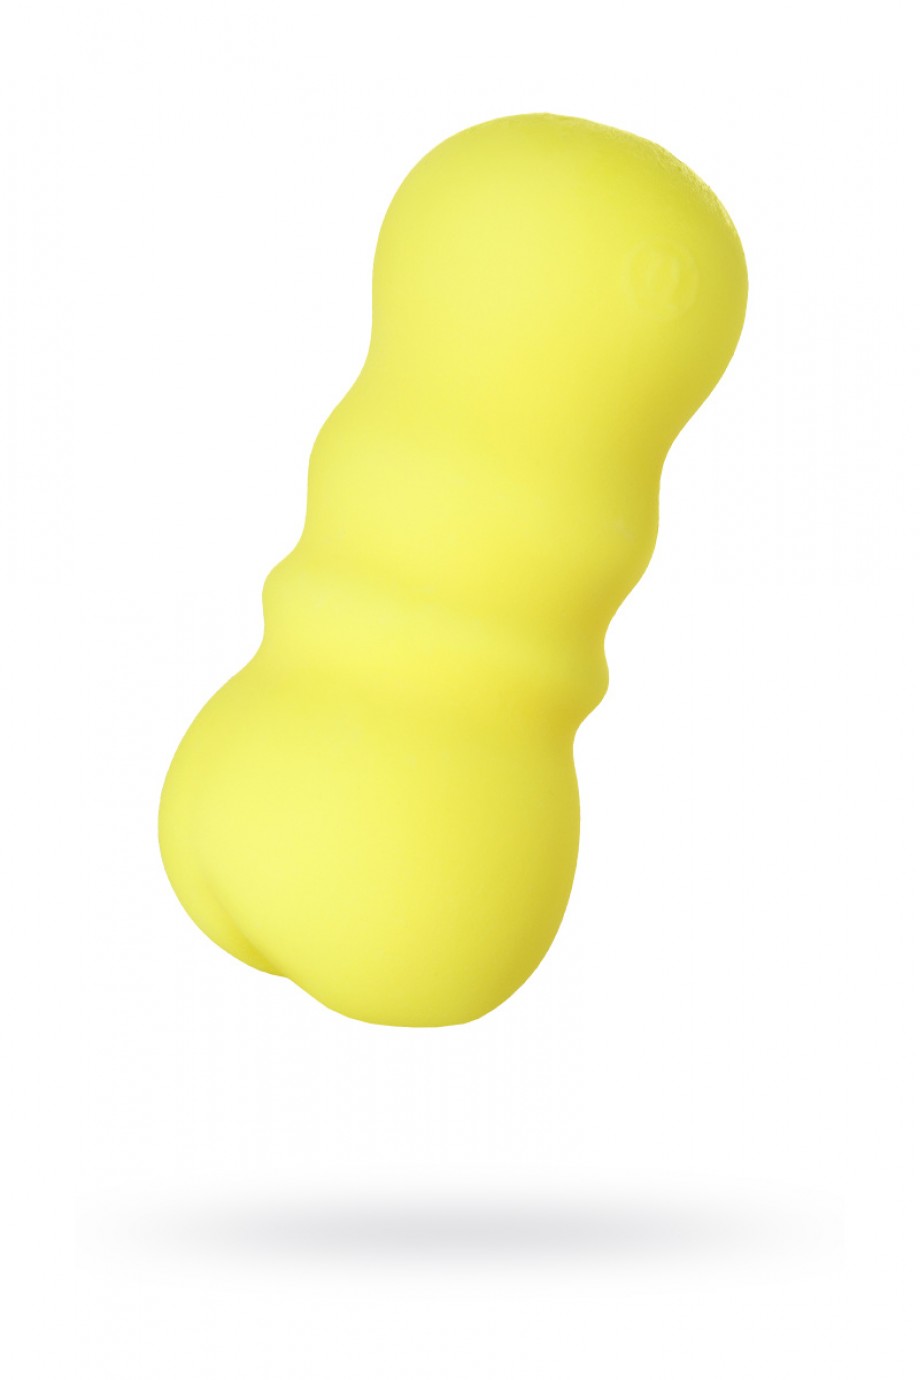 MensMax FEEL 2, желтый